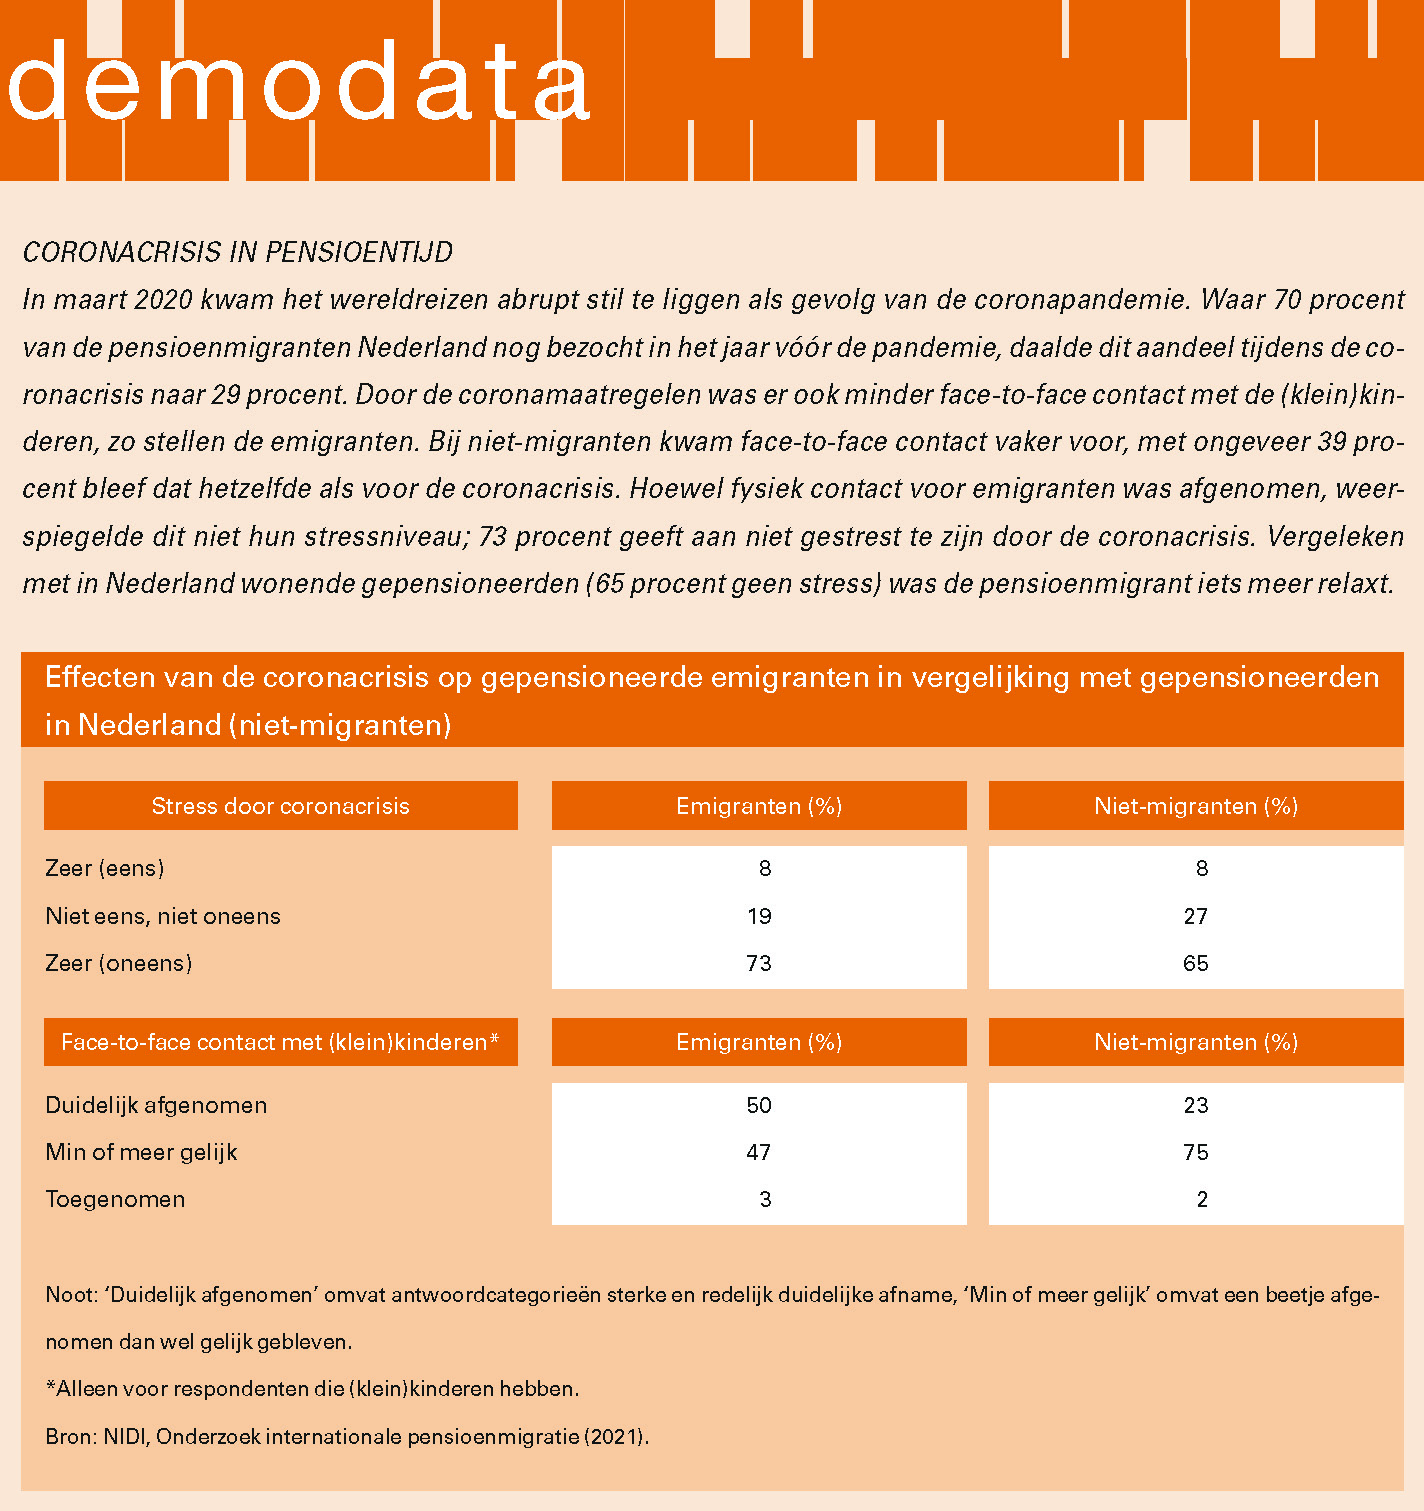 Effecten van de coronacrisis op gepensioneerde emigranten in vergelijking met gepensioneerden in Nederland (niet-migranten)